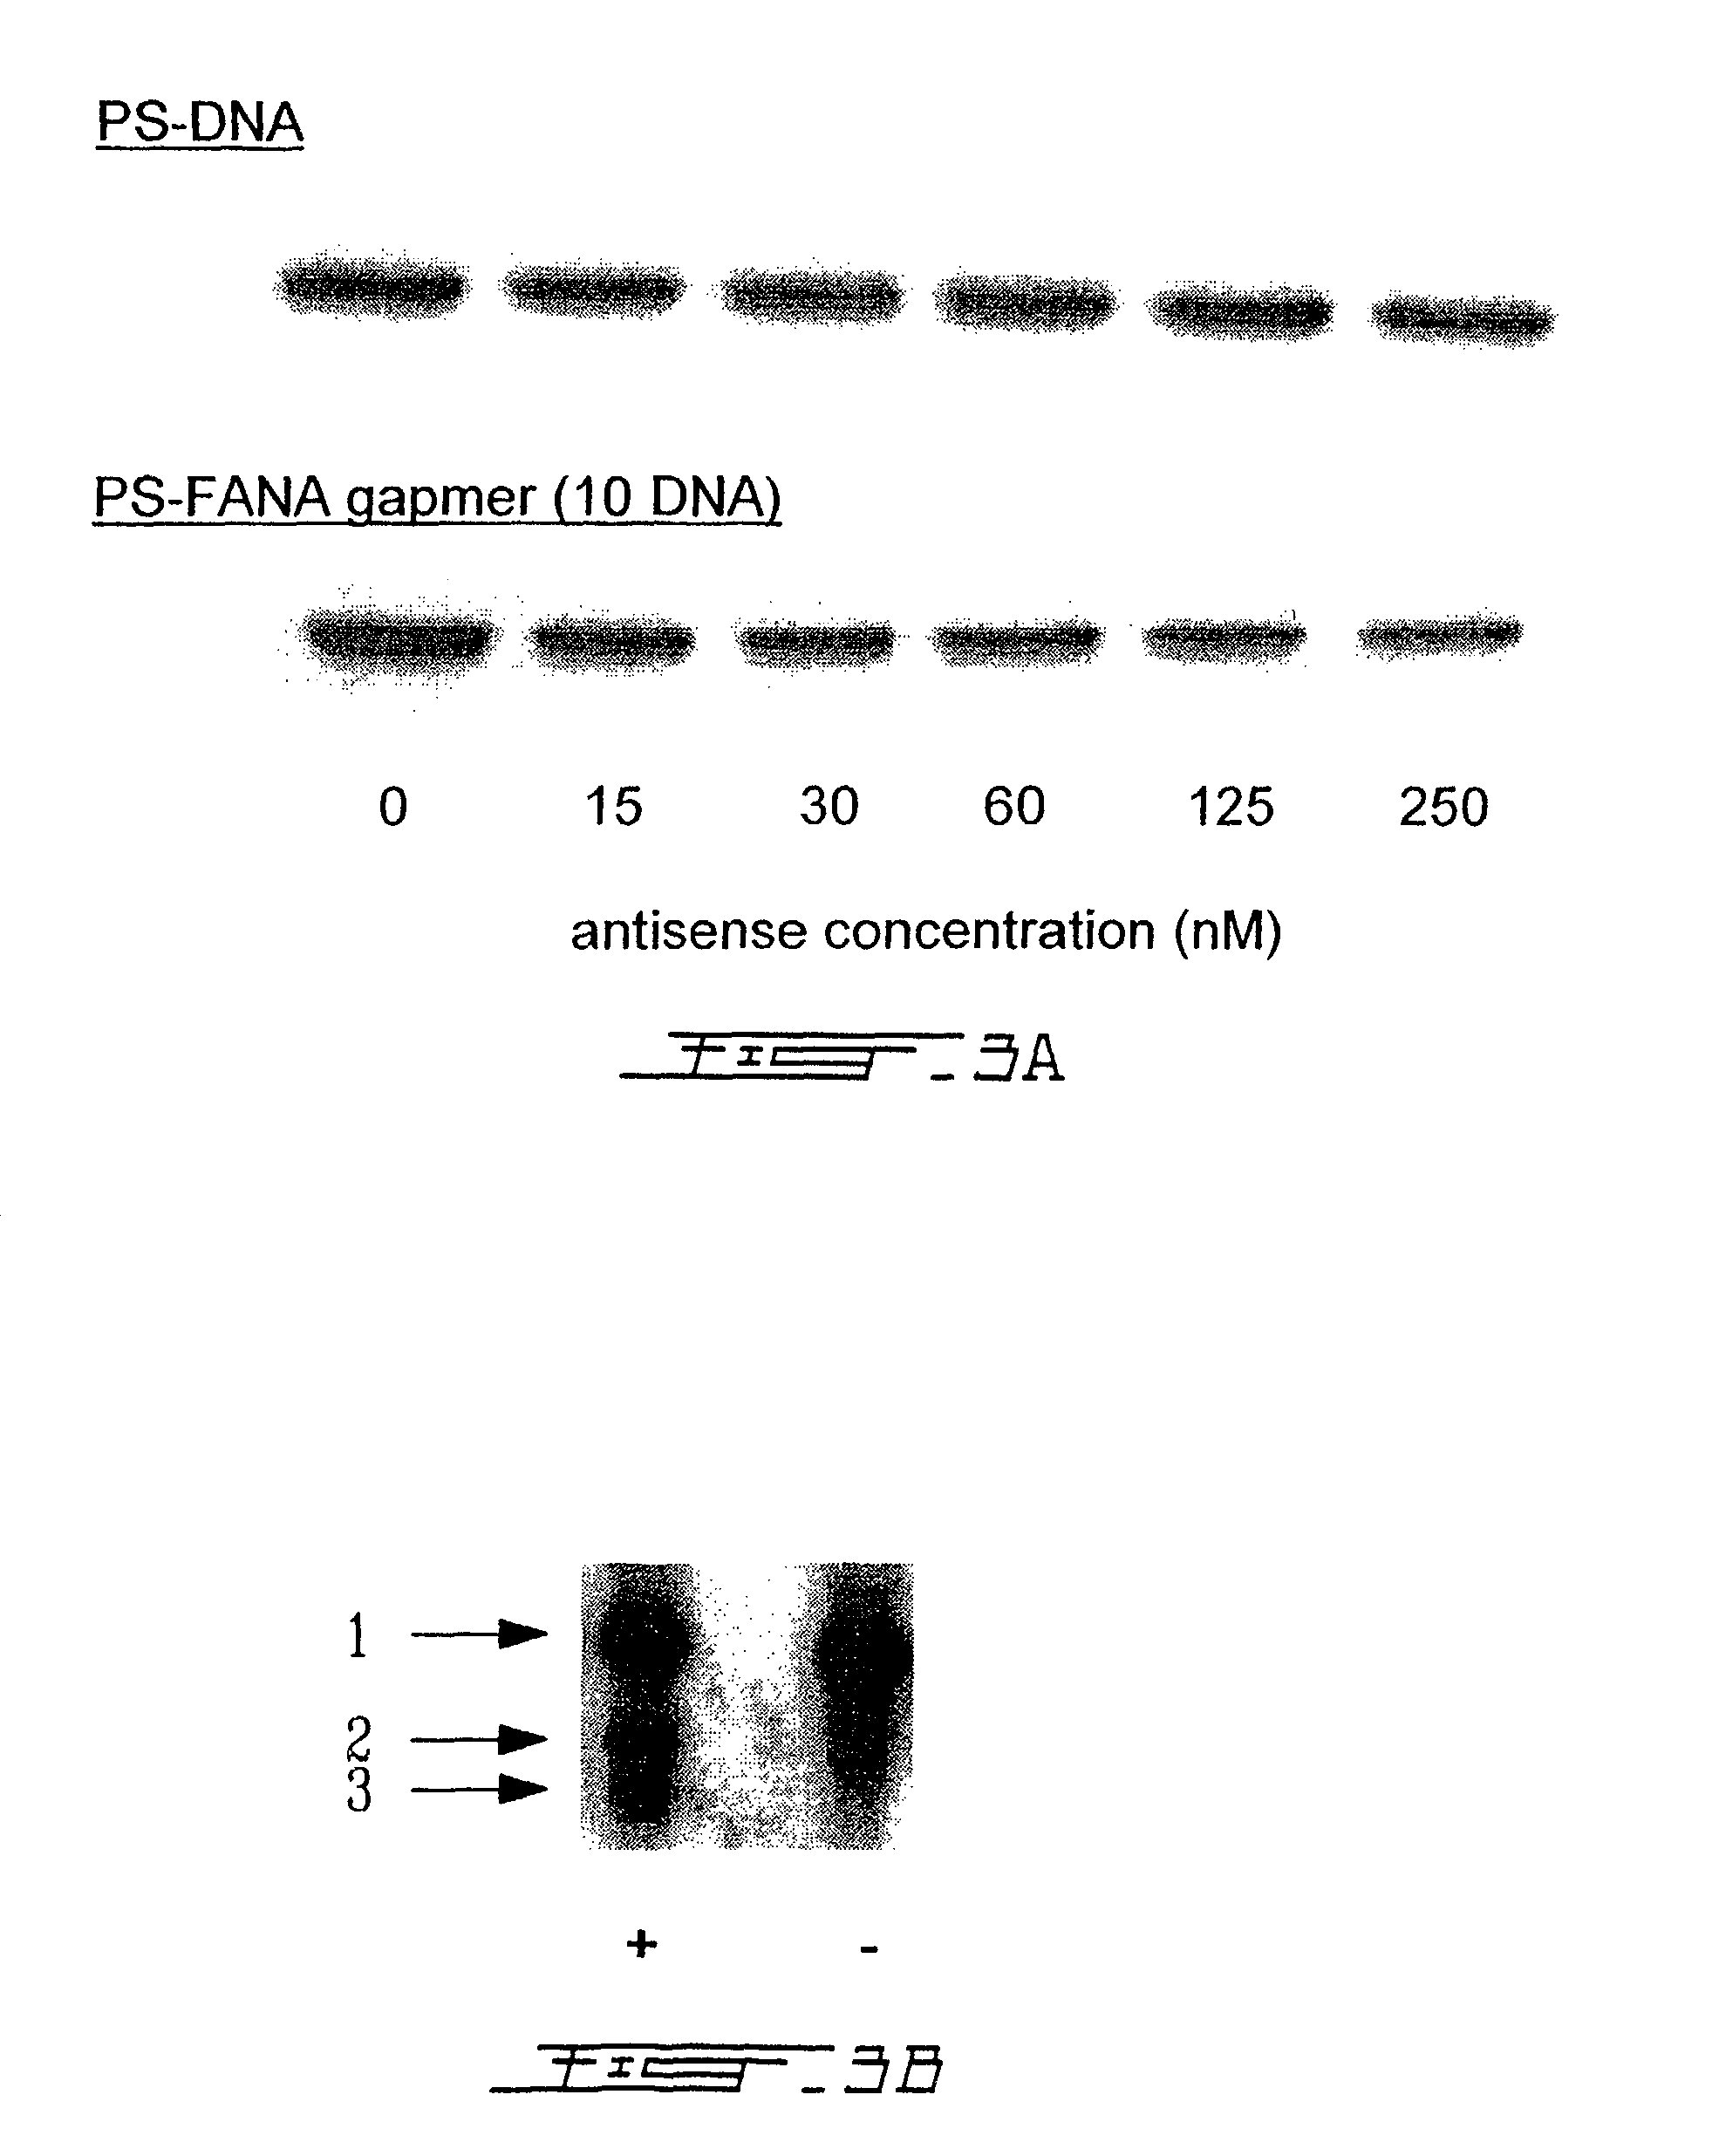 Chimeric antisense oligonucleotides of arabinofuranose analogue and deoxyribose nucleotides